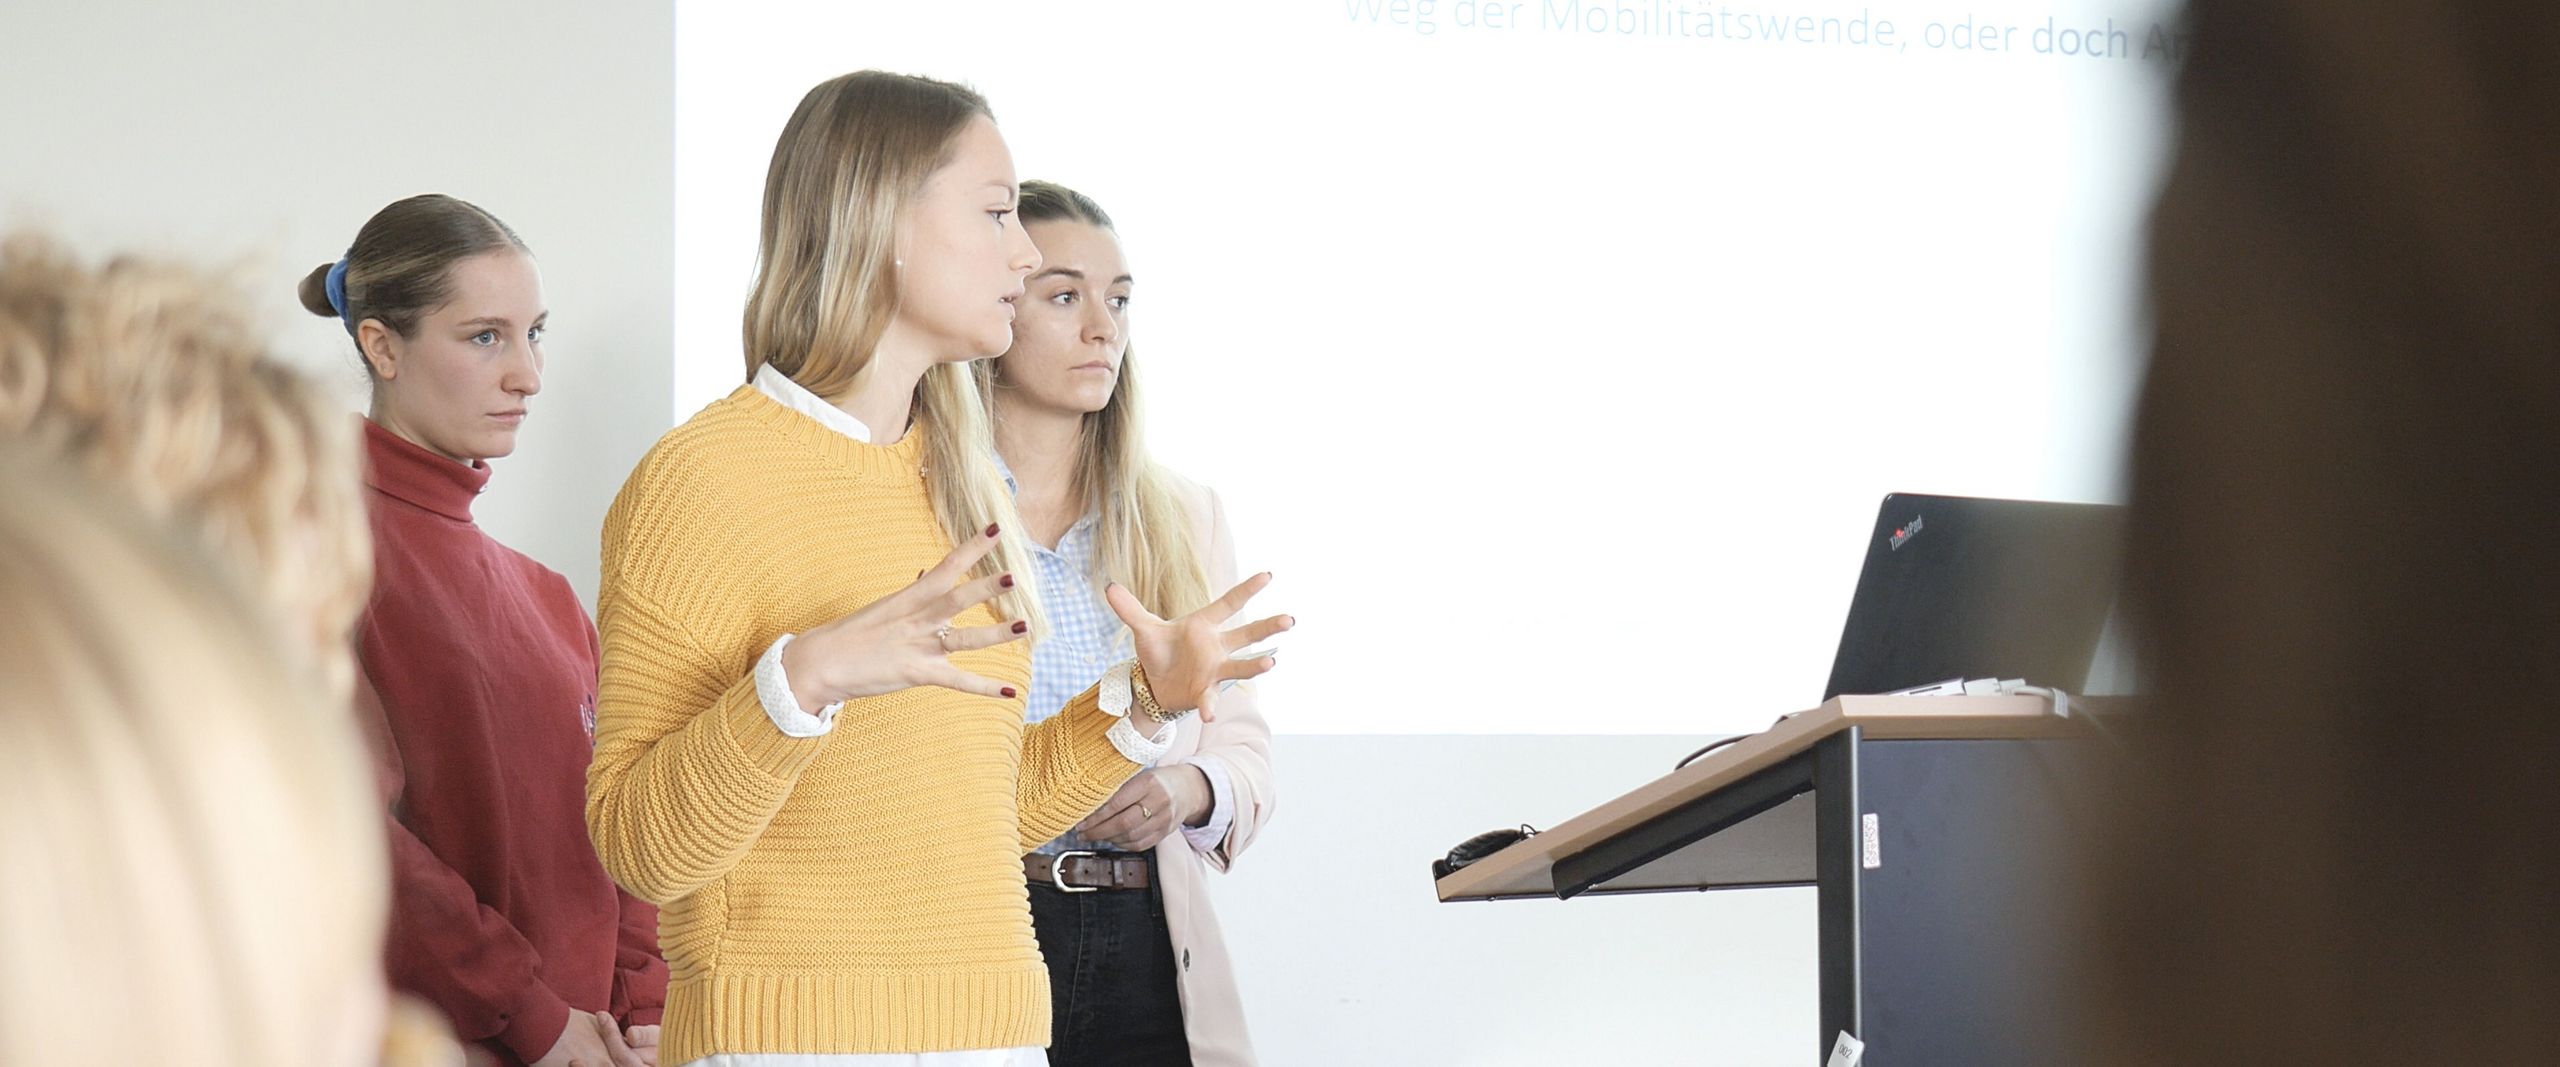 Auf dem Bild sind drei Studentinnen zu sehen, die vor einer Gruppe Menschen einen Vortrag hält. In Hintergrund an einer weißen Wand lässt sich eine Präsentation erahnen. 